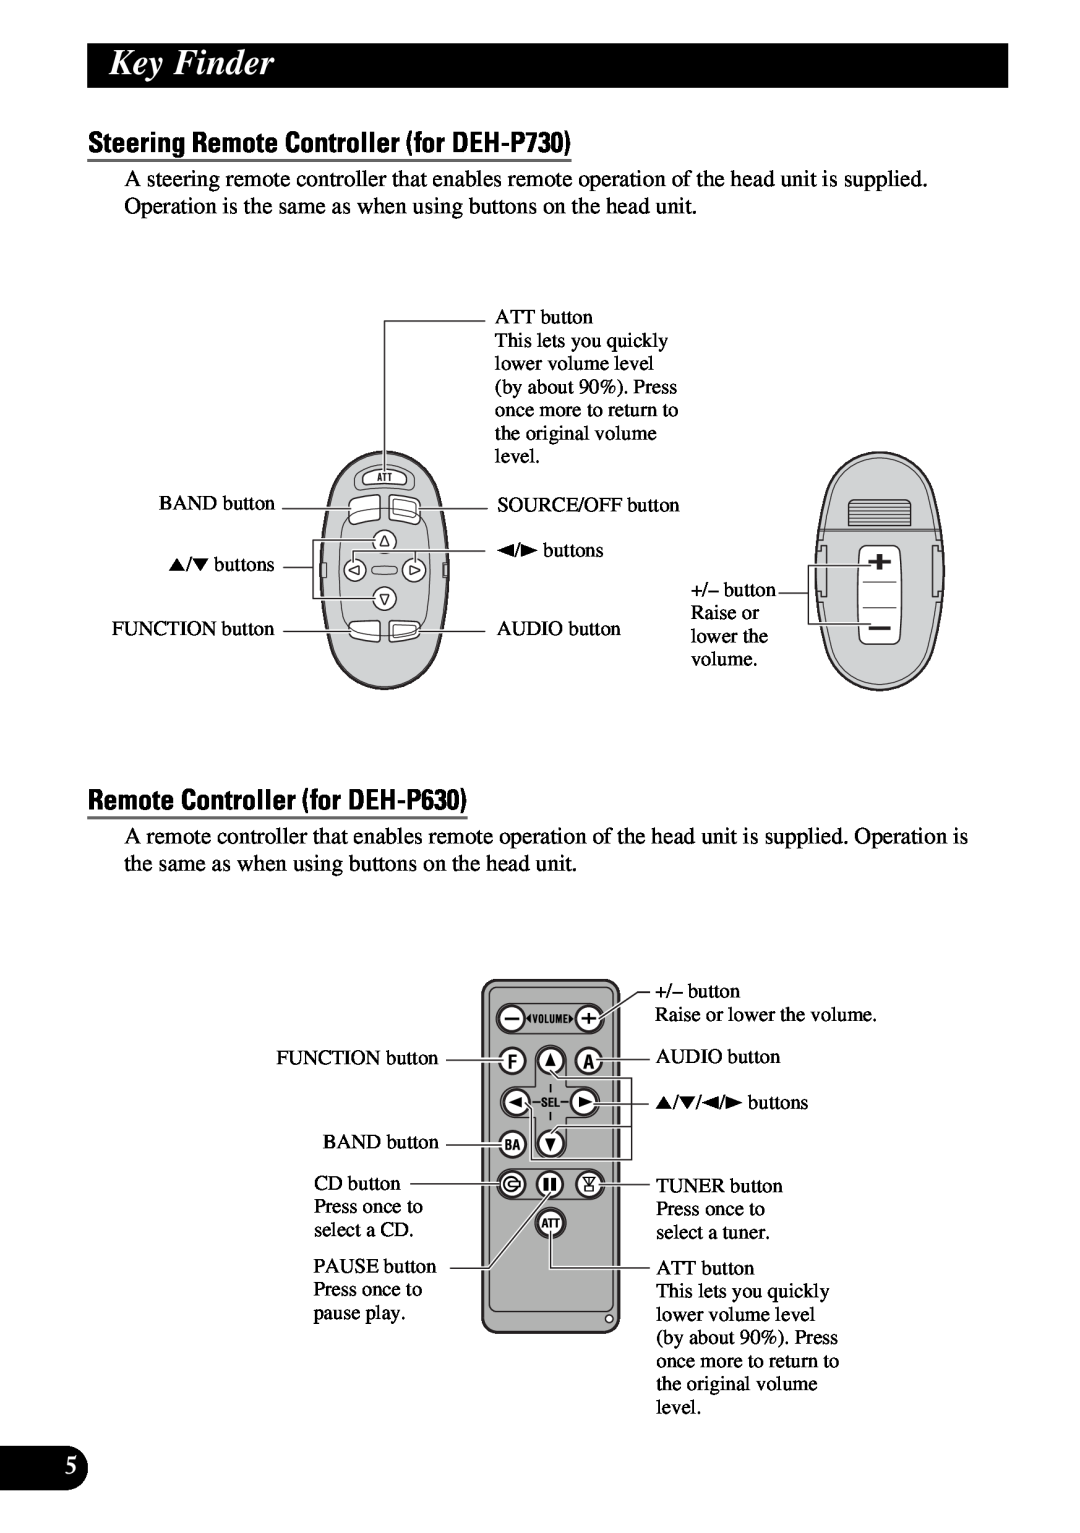 Pioneer operation manual Steering Remote Controller for DEH-P730, Remote Controller for DEH-P630, Key Finder 